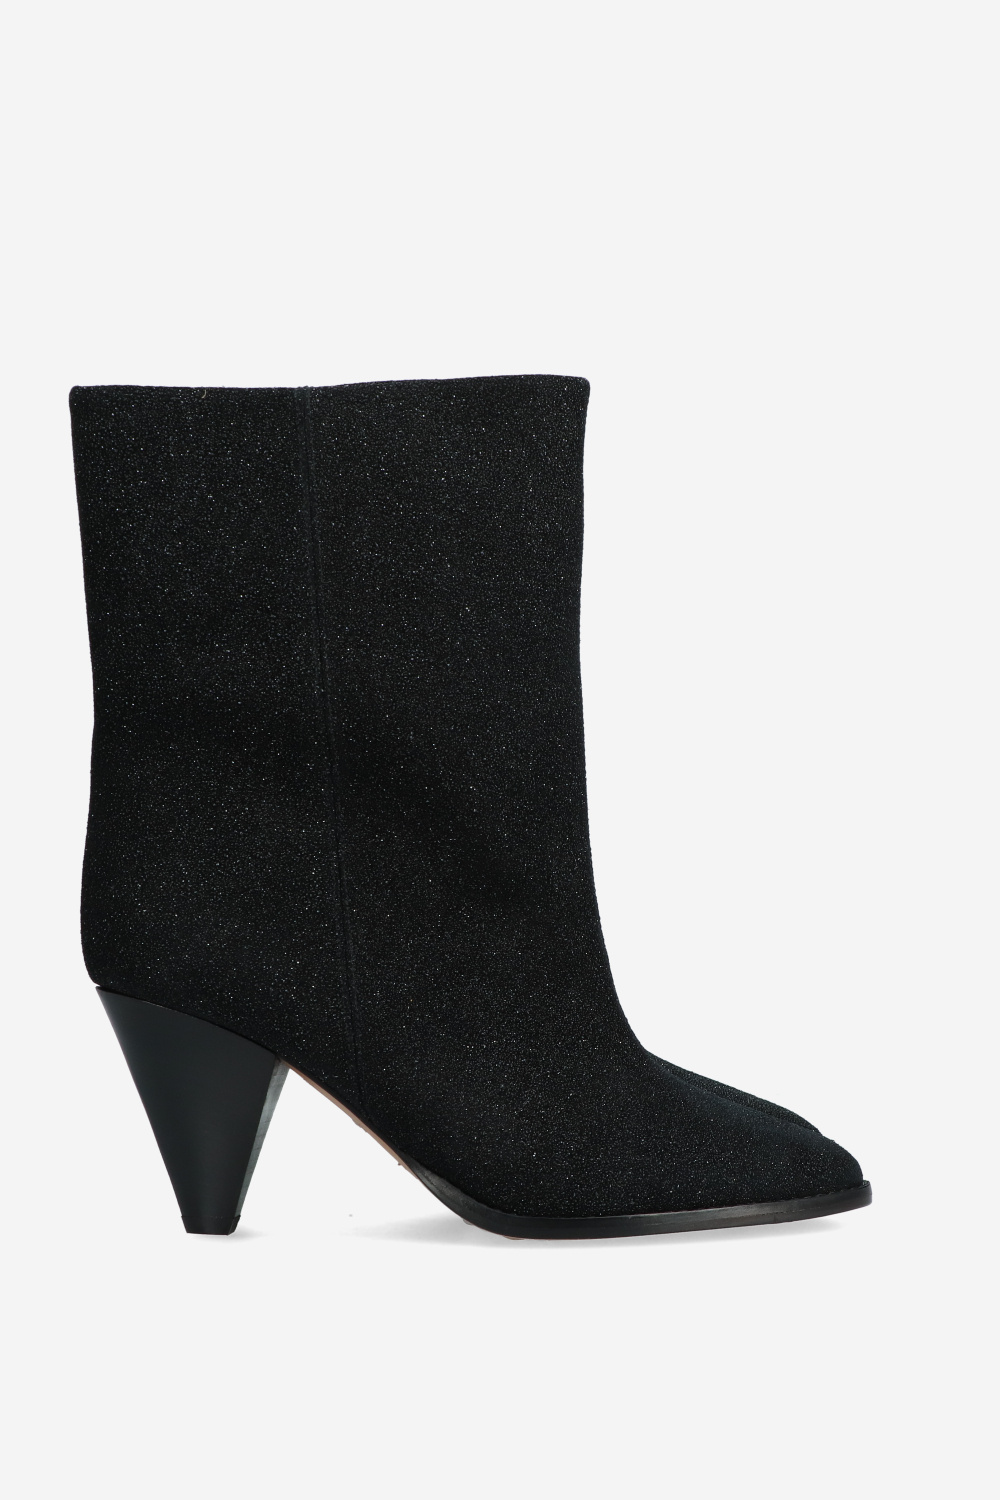 Isabel Marant Boots Black